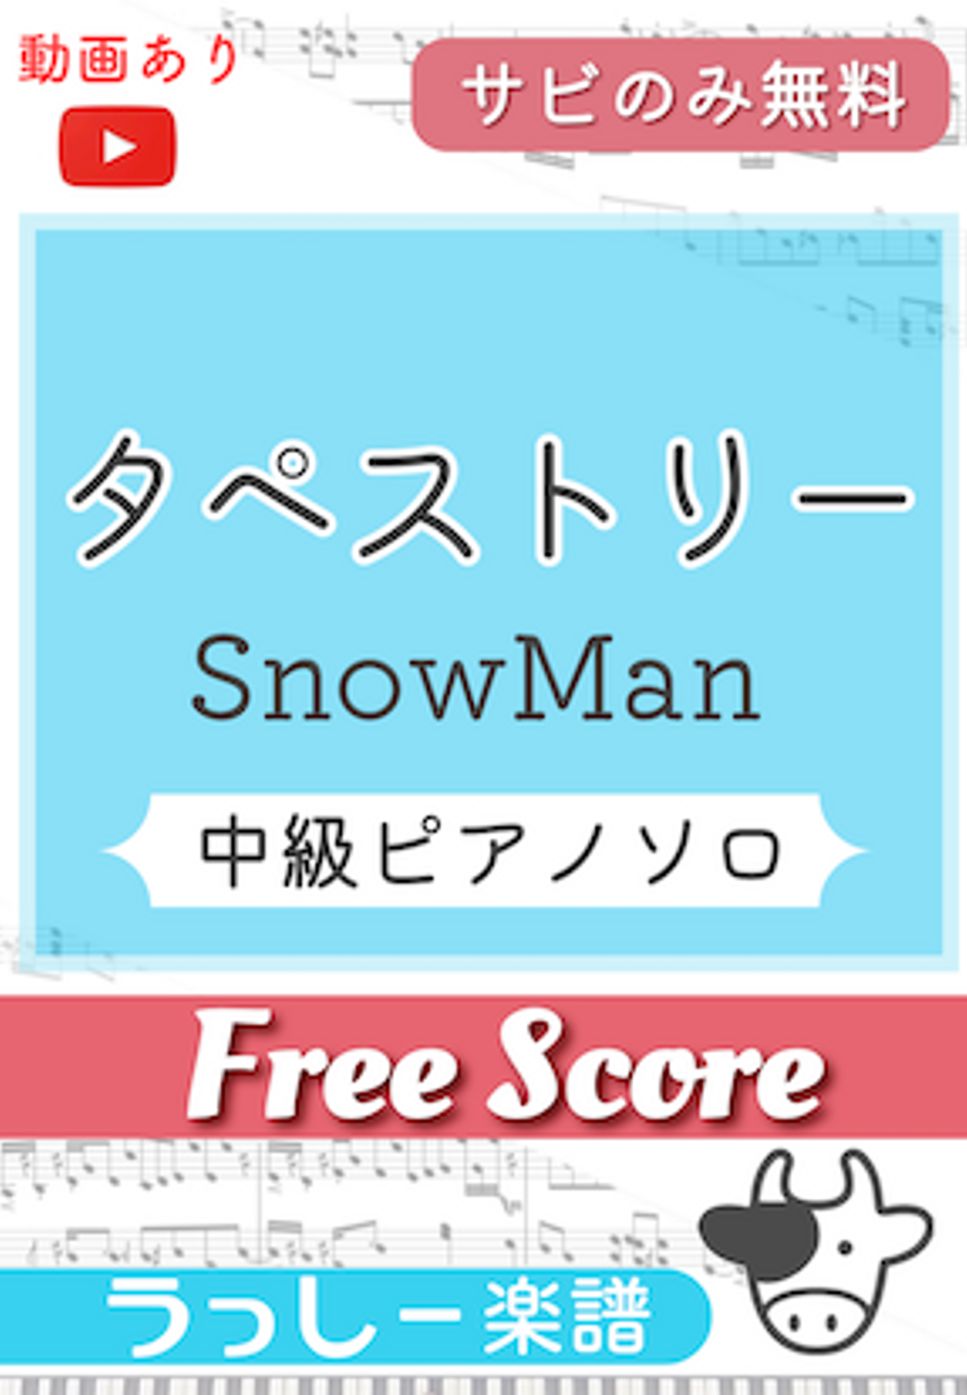 Snow Man - タペストリー (サビのみ無料) by 牛武奏人